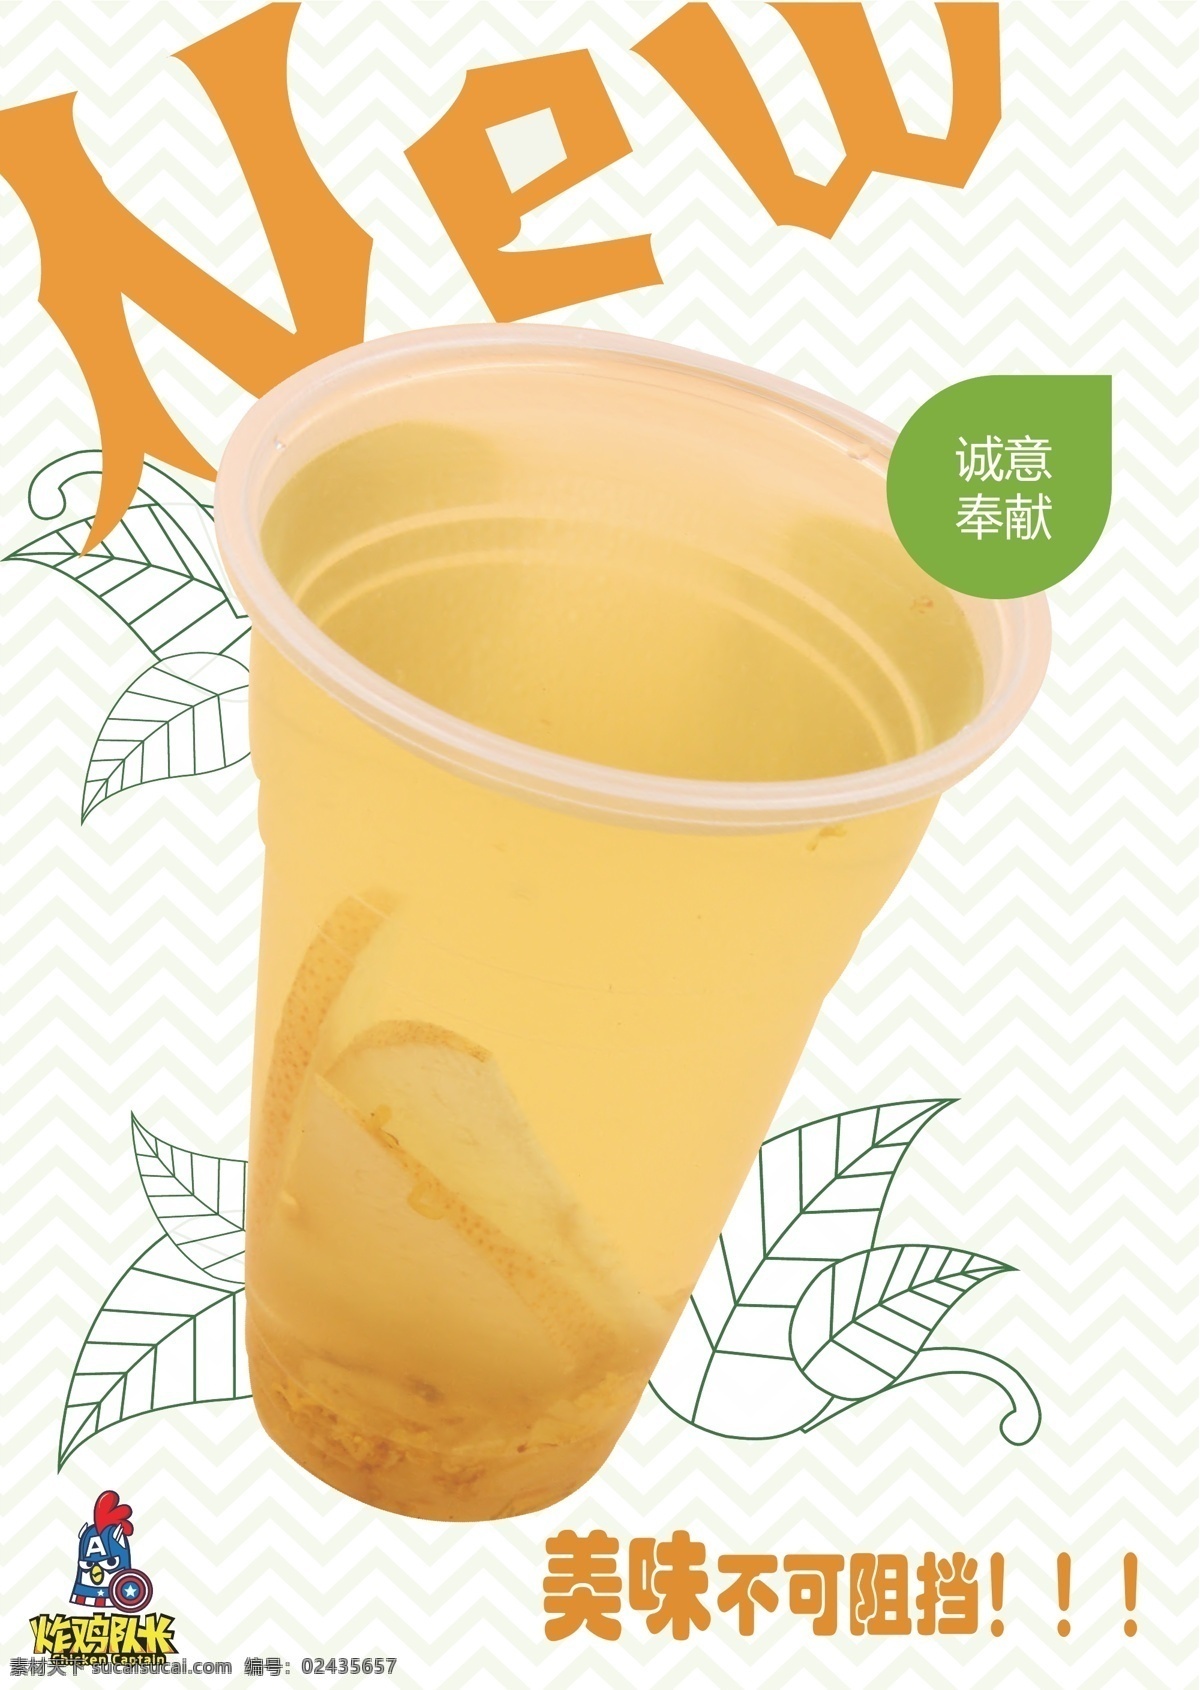 桂花雪梨茶 甜品 甜品海报 果汁系列 小吃 奶茶 海报 炸鸡队长 果饮 茶饮